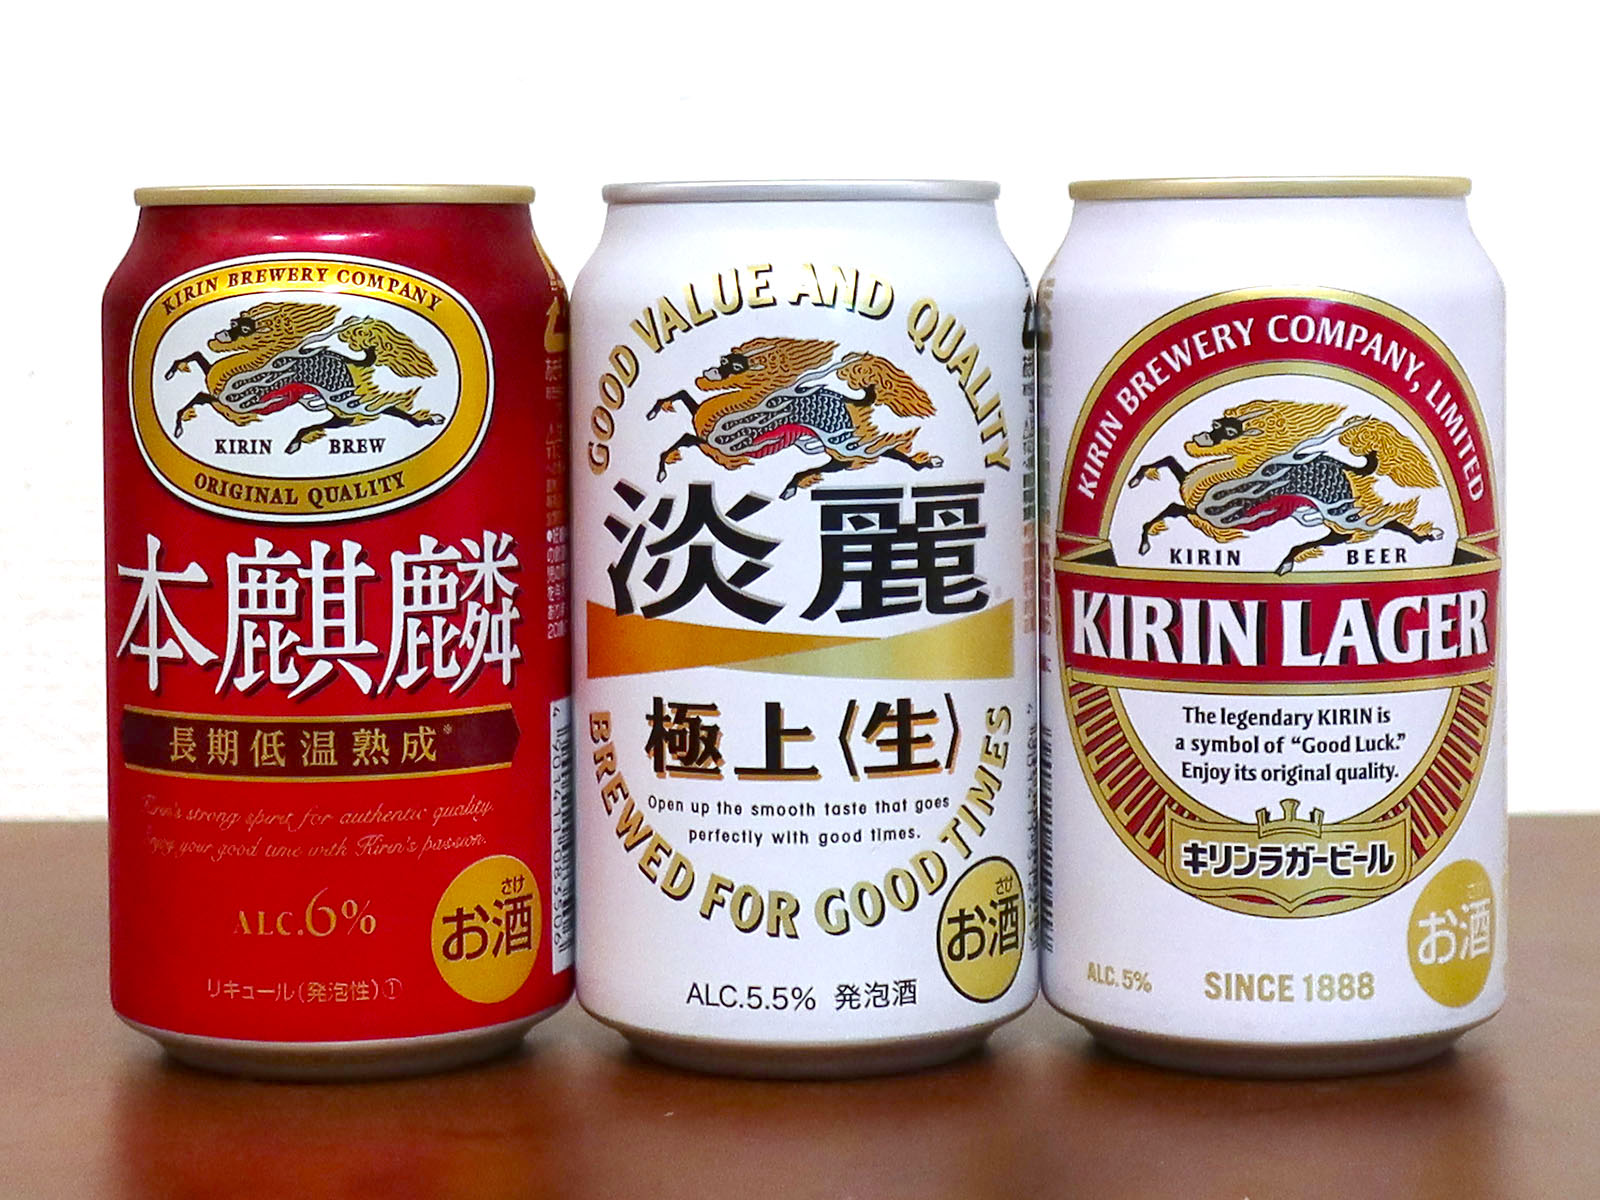   復刻版 昭和初期時 KIRIN キリンラガービール ステッカー